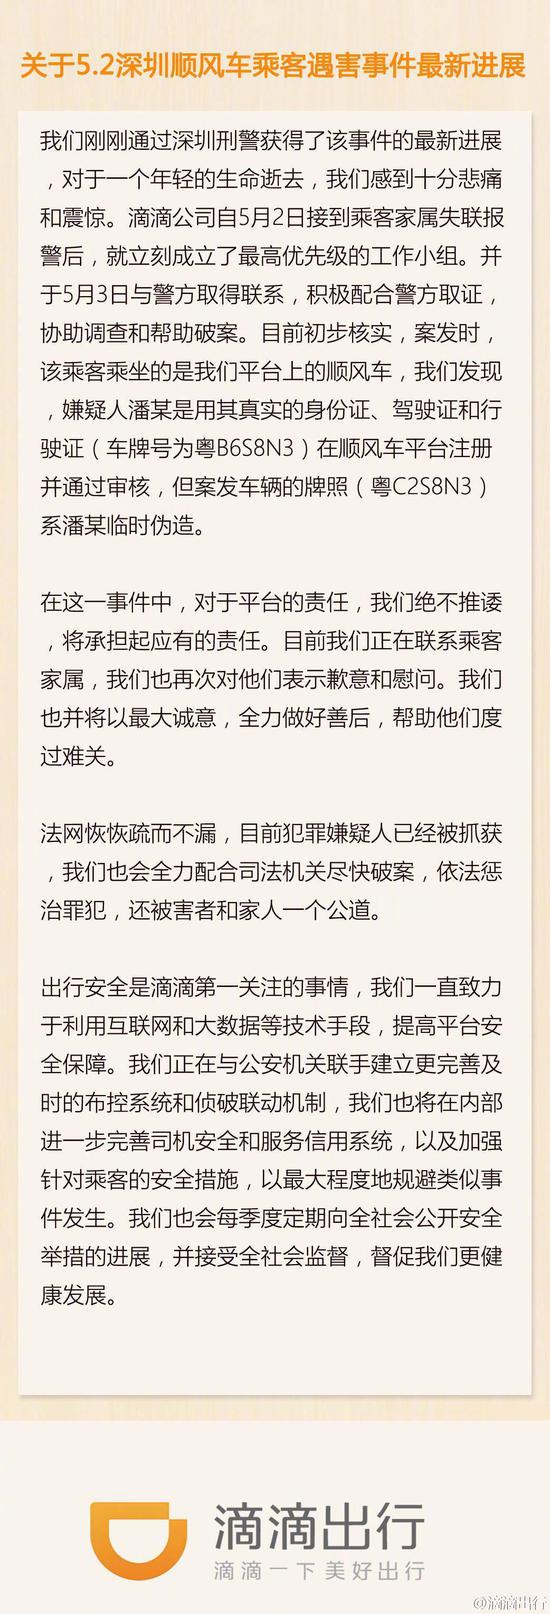 2016年深圳女教师遇害的致歉声明